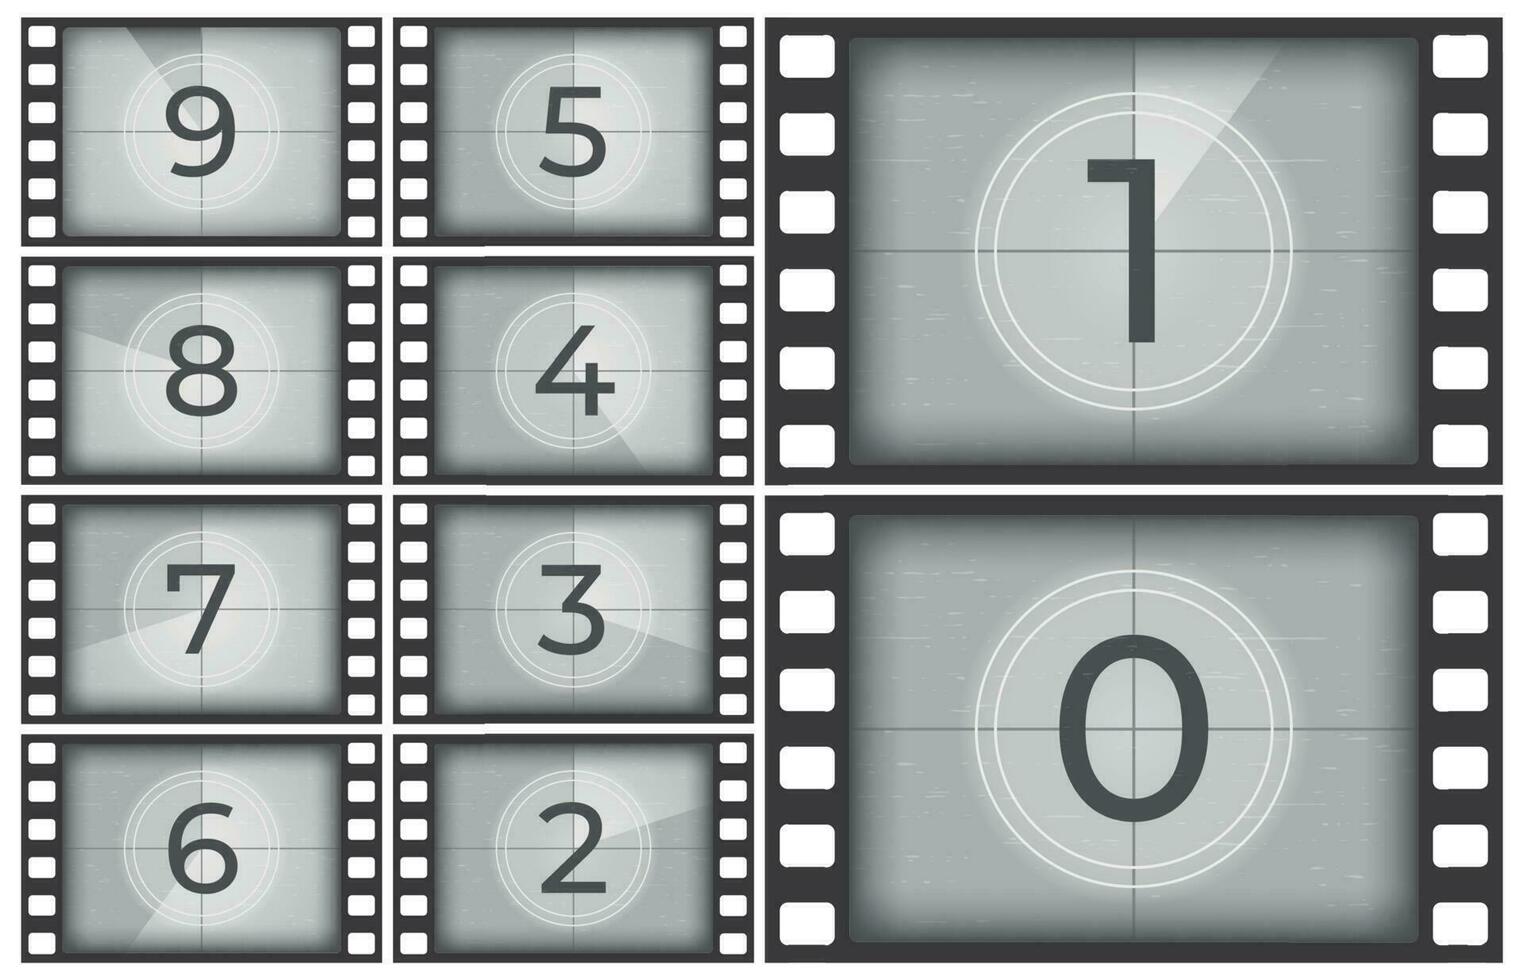 cine película cuenta regresiva. antiguo película Película (s tira marco, Clásico introducción pantalla contando números o retro Temporizador marcos vector ilustración